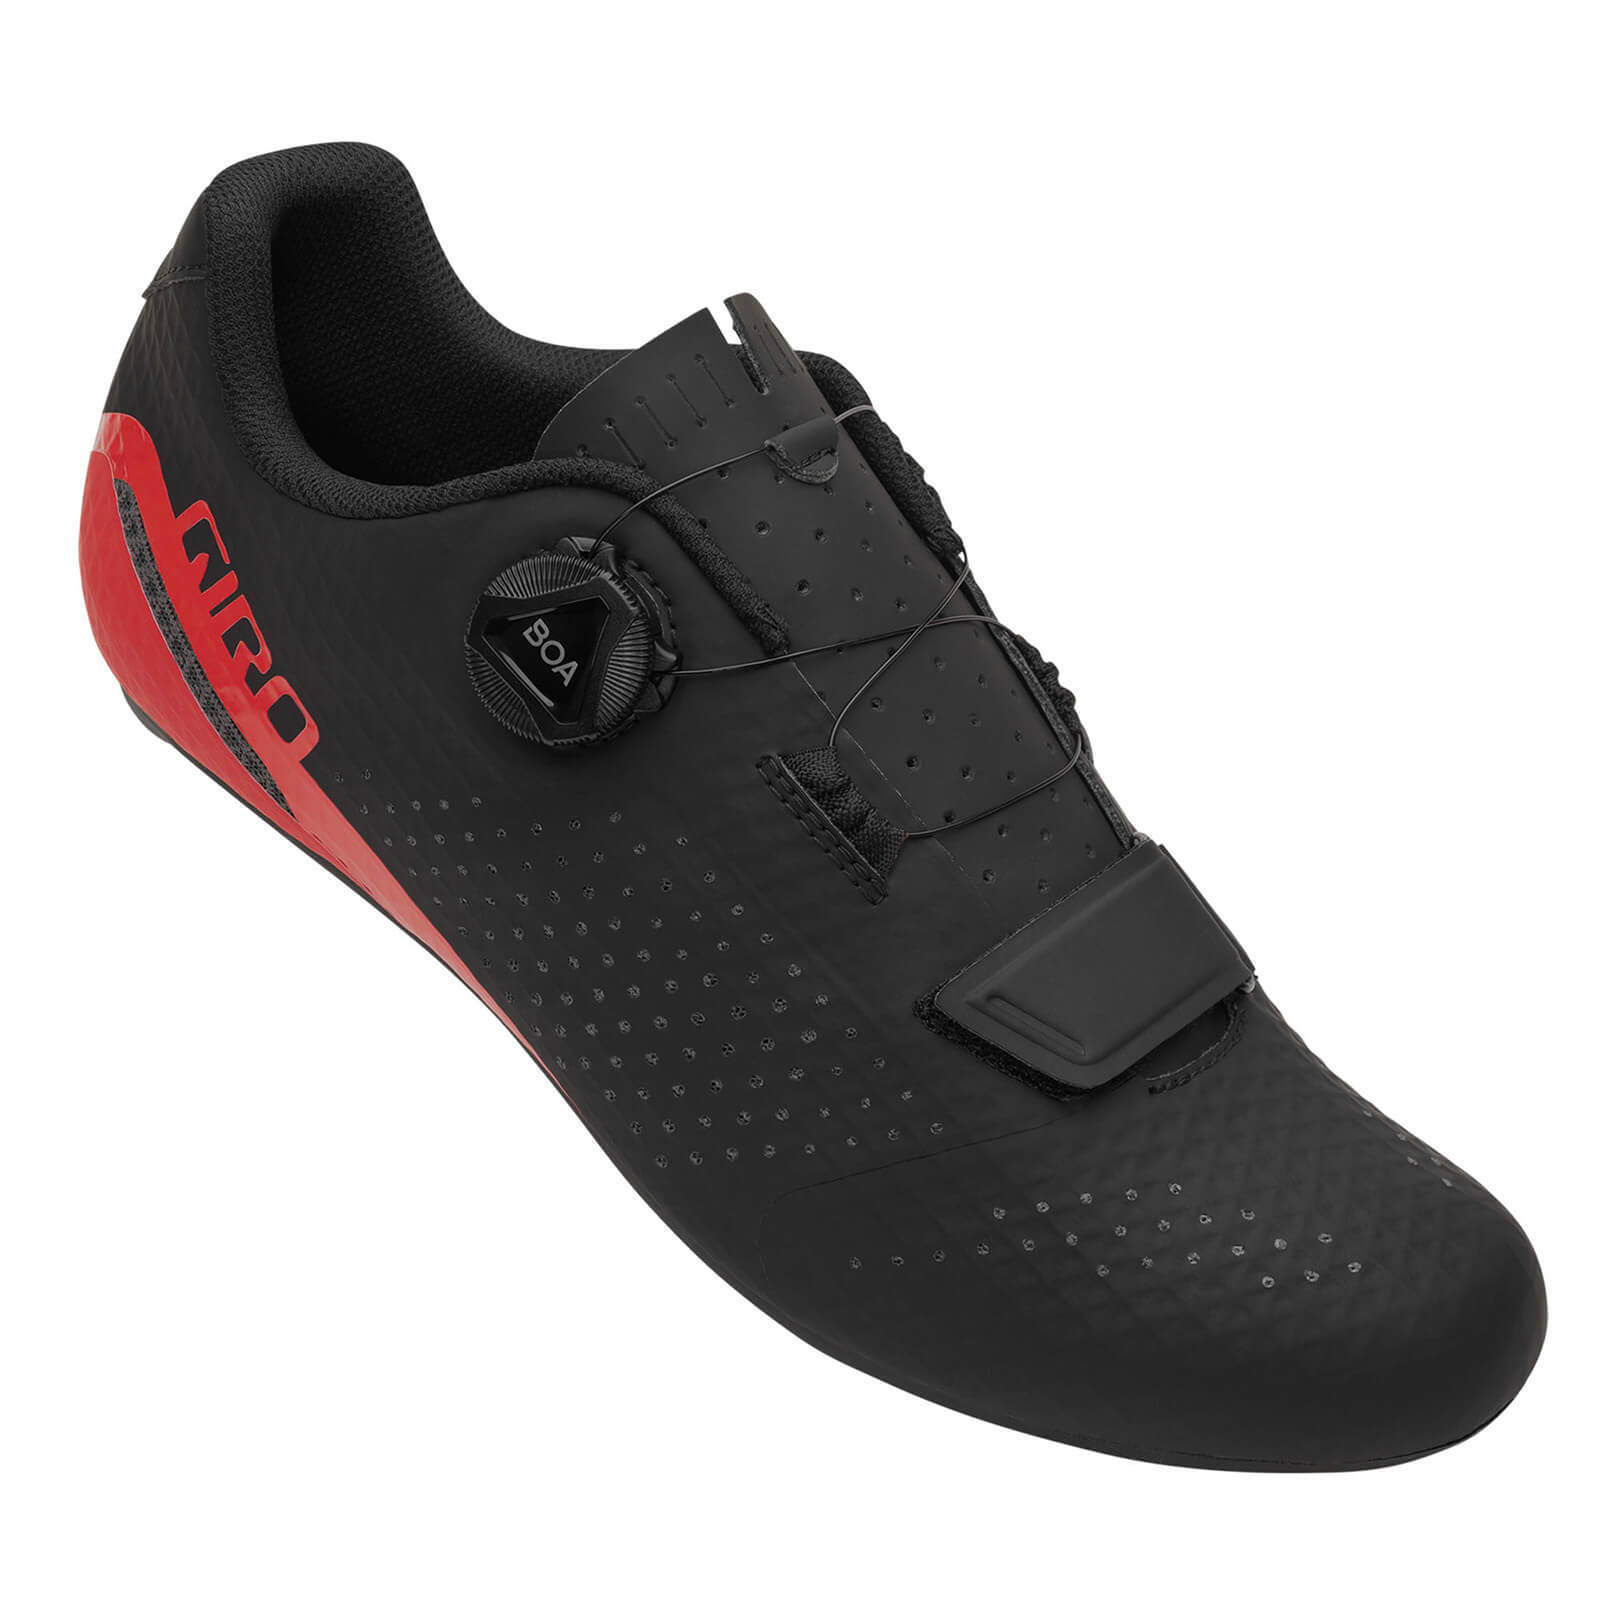 Giro Cadet Road Shoes – EU 46 – Black/Bright Red